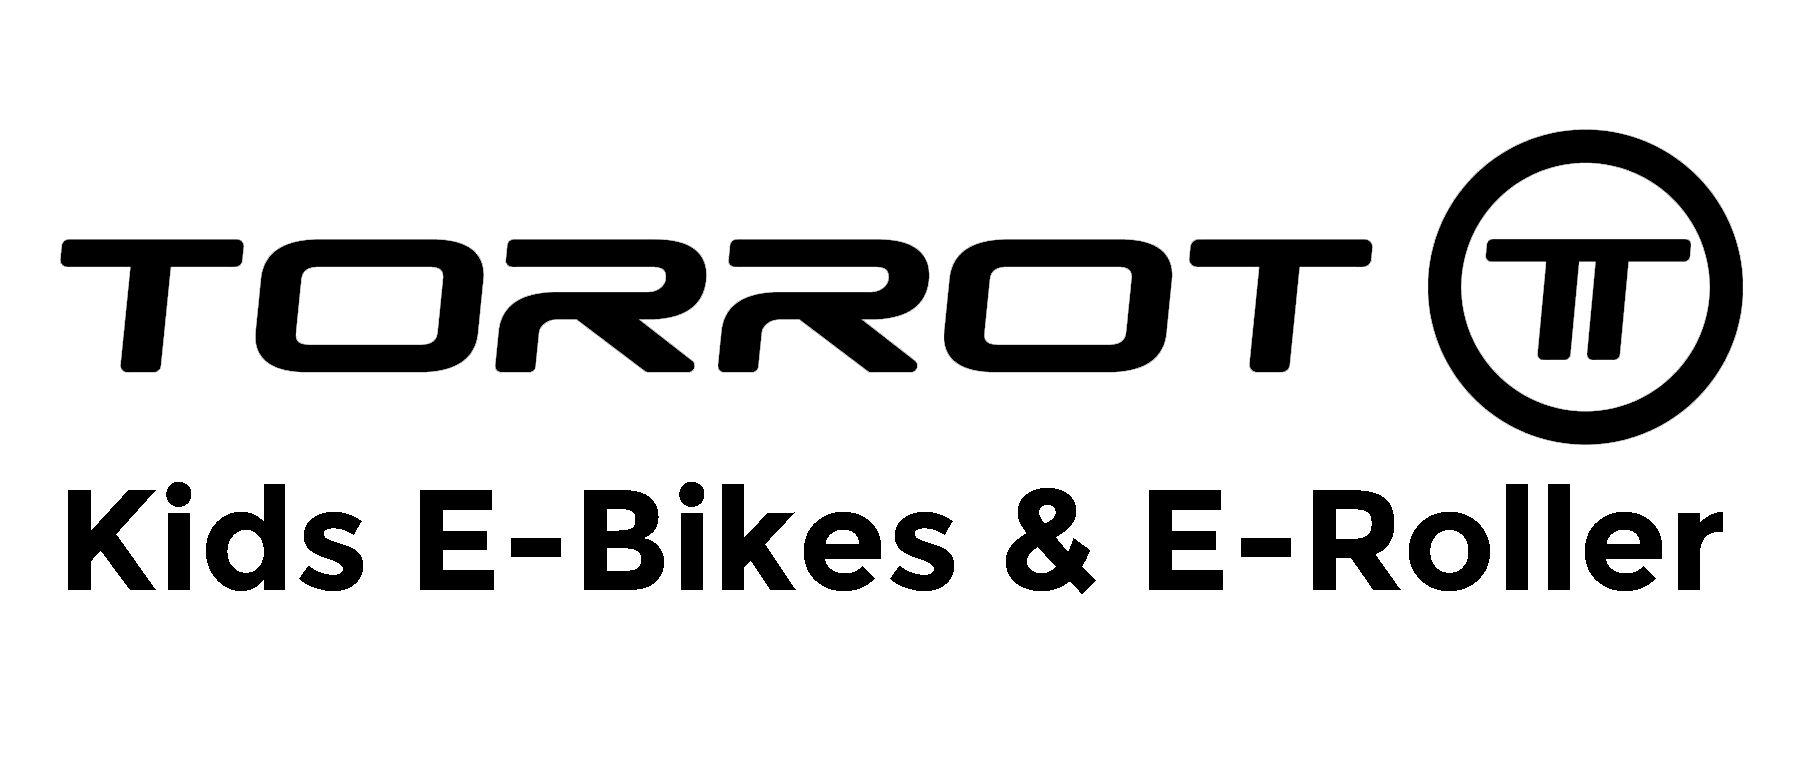 Torrot - Kids E-Bikes & E-Roller